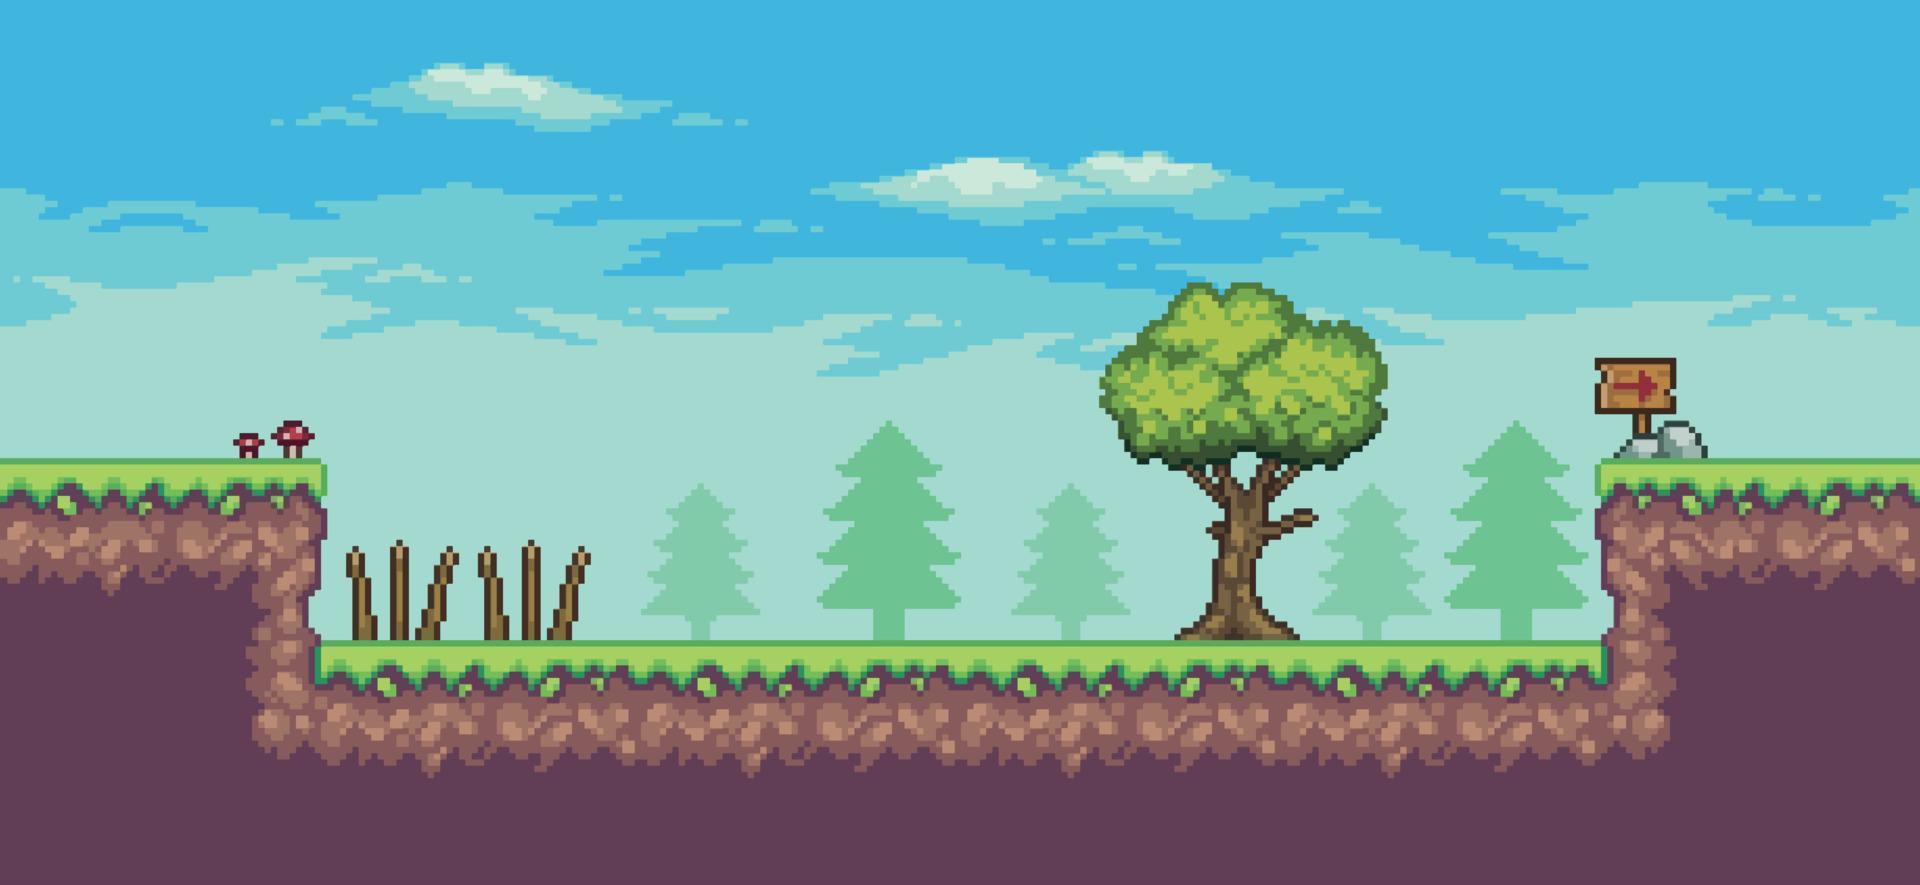 cena de jogo de arcade pixel art com árvores, tábua de madeira, armadilha e nuvens de fundo vetorial de 8 bits vetor